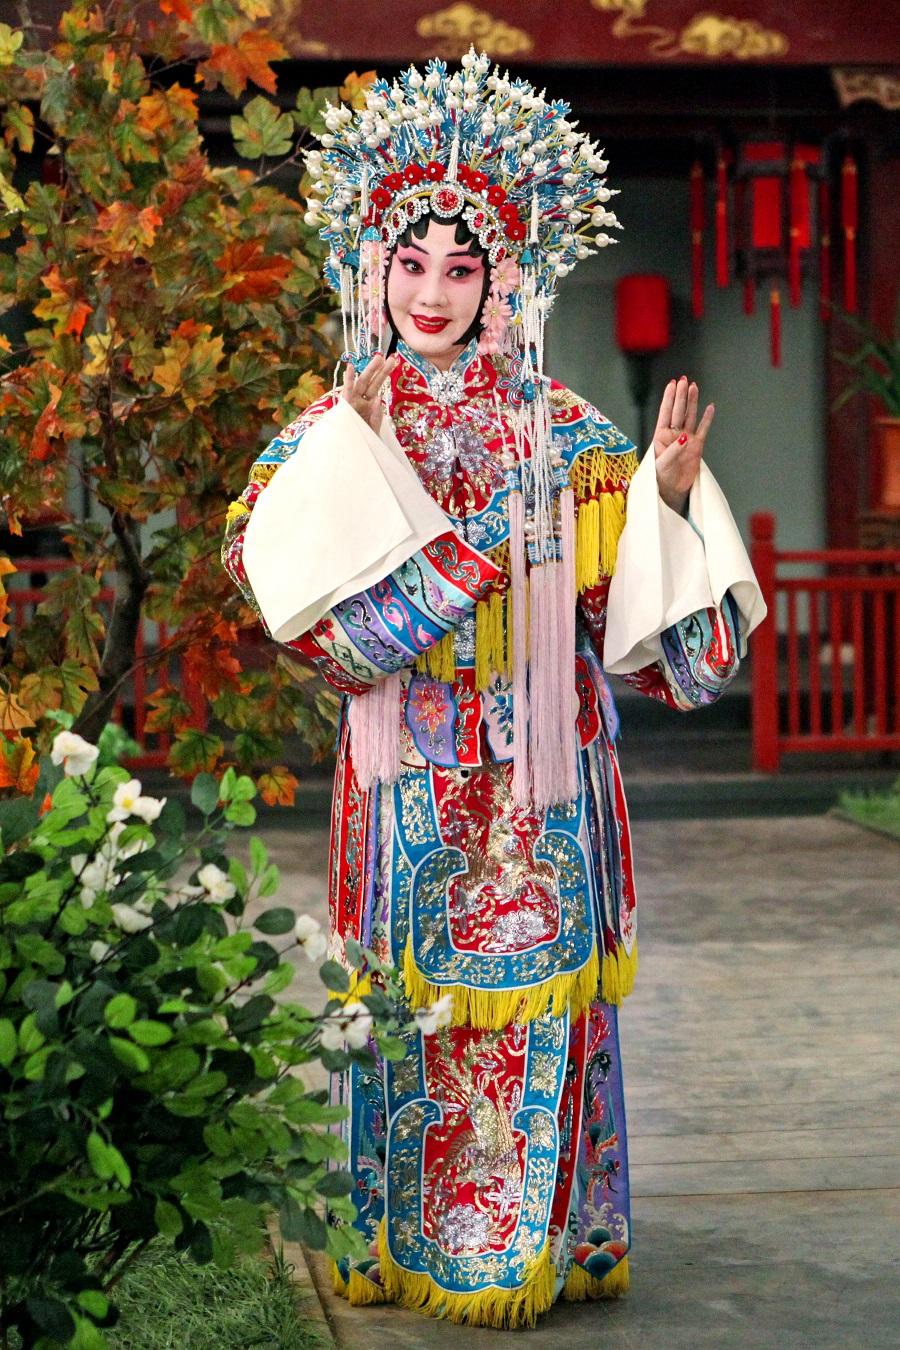 由康乐及文化事务署主办的中国戏曲节（戏曲节）今年于六月至十月期间带来高水平戏曲节目。图为中国戏剧梅花奬得主王蓉蓉，她将随北京京剧院剧组赴港演出，为今年的戏曲节掀开序幕。